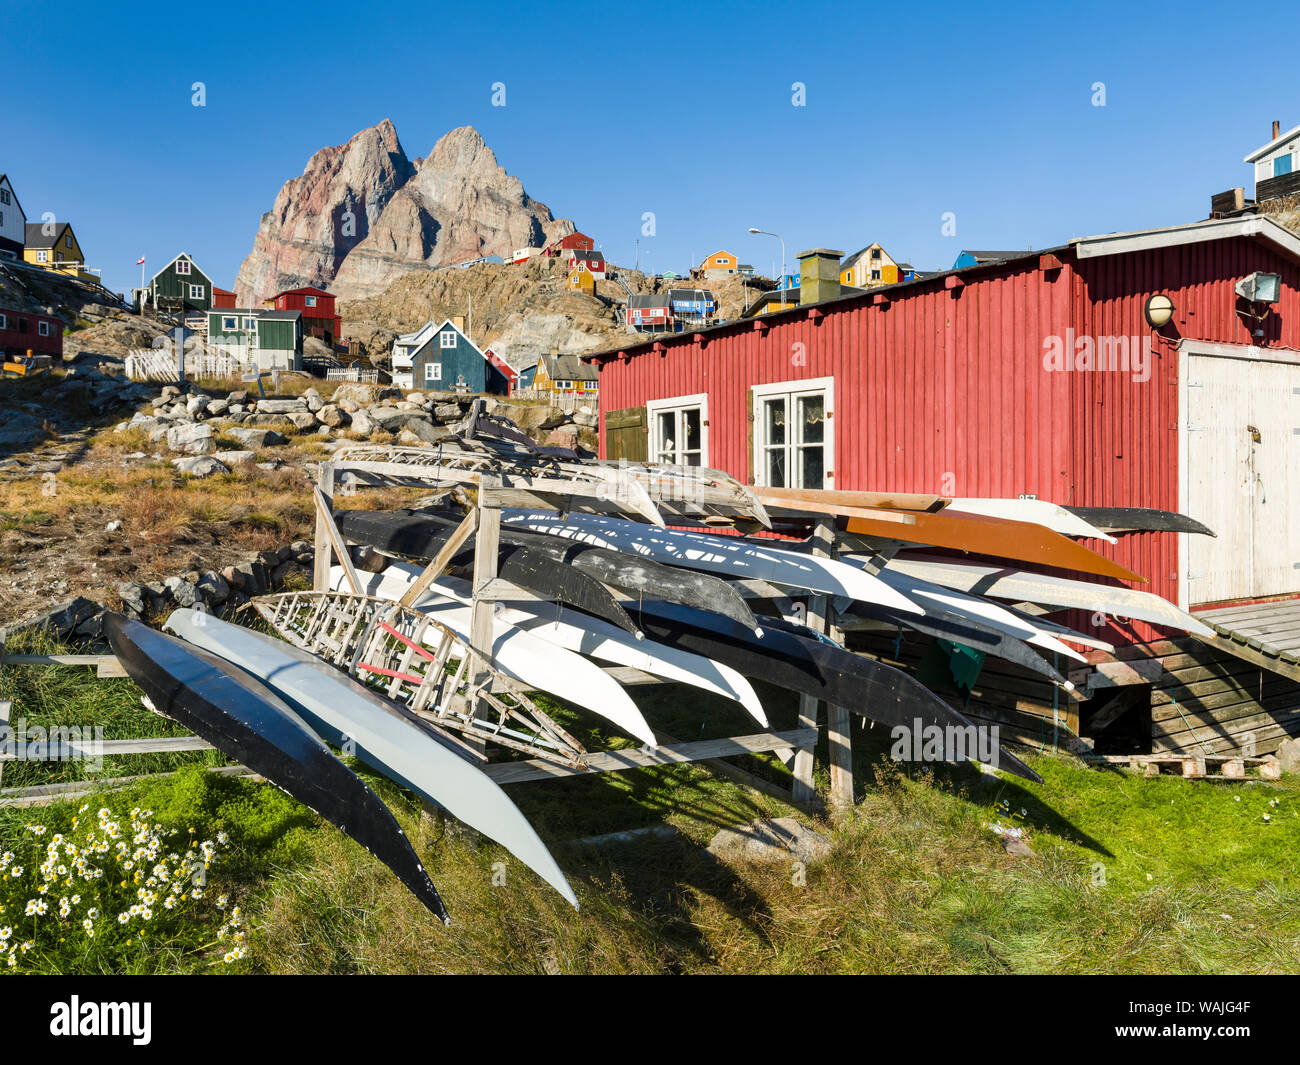 Kajak auf Rack, t die lokale Kajak Club. Kleine Stadt von Uummannaq, Nordwesten Grönlands. Stockfoto